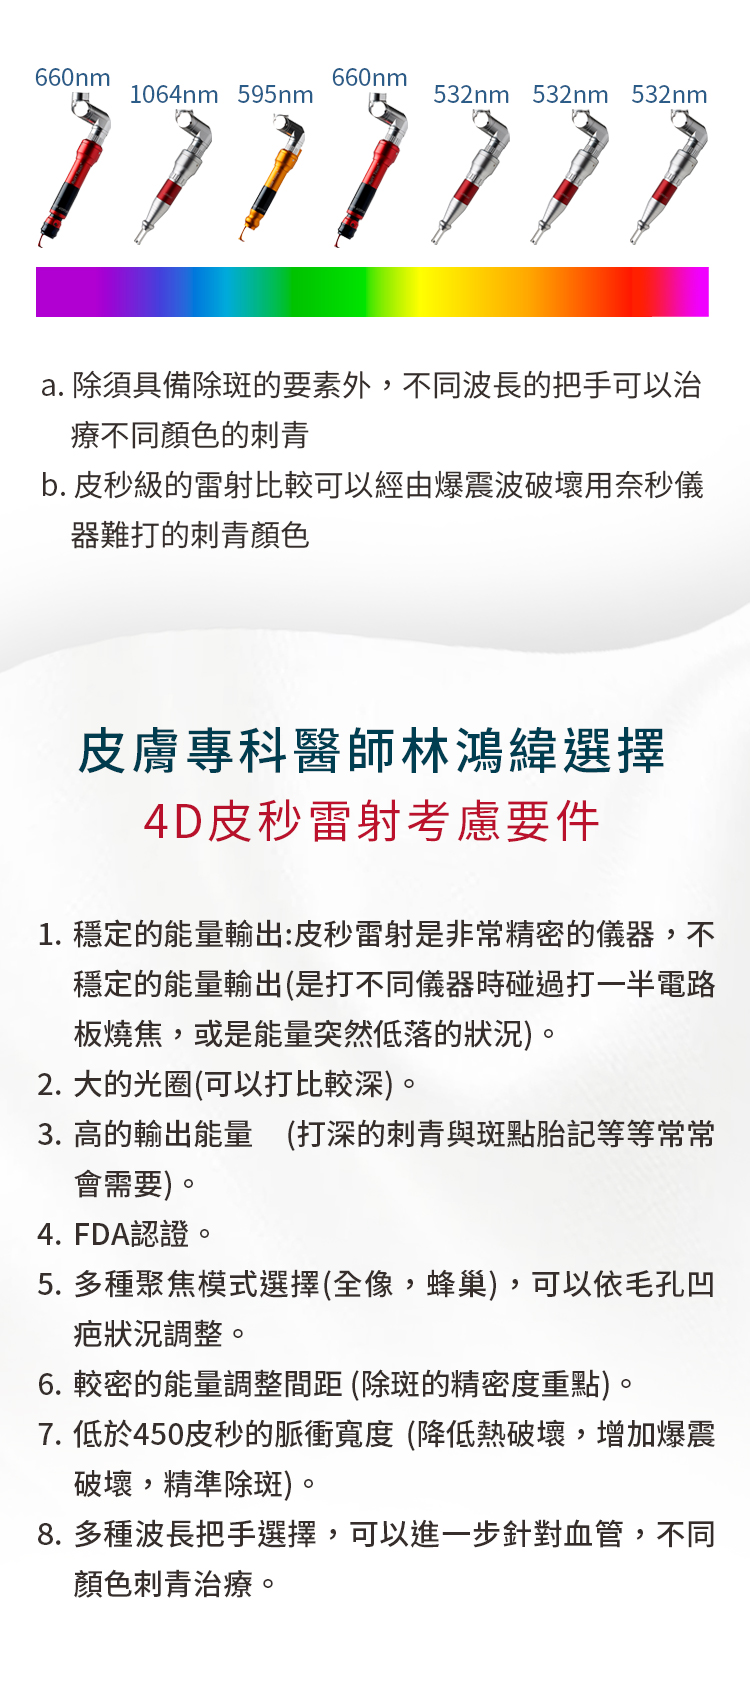 皮膚專科醫師林鴻緯選擇 4D皮秒雷射考慮條件